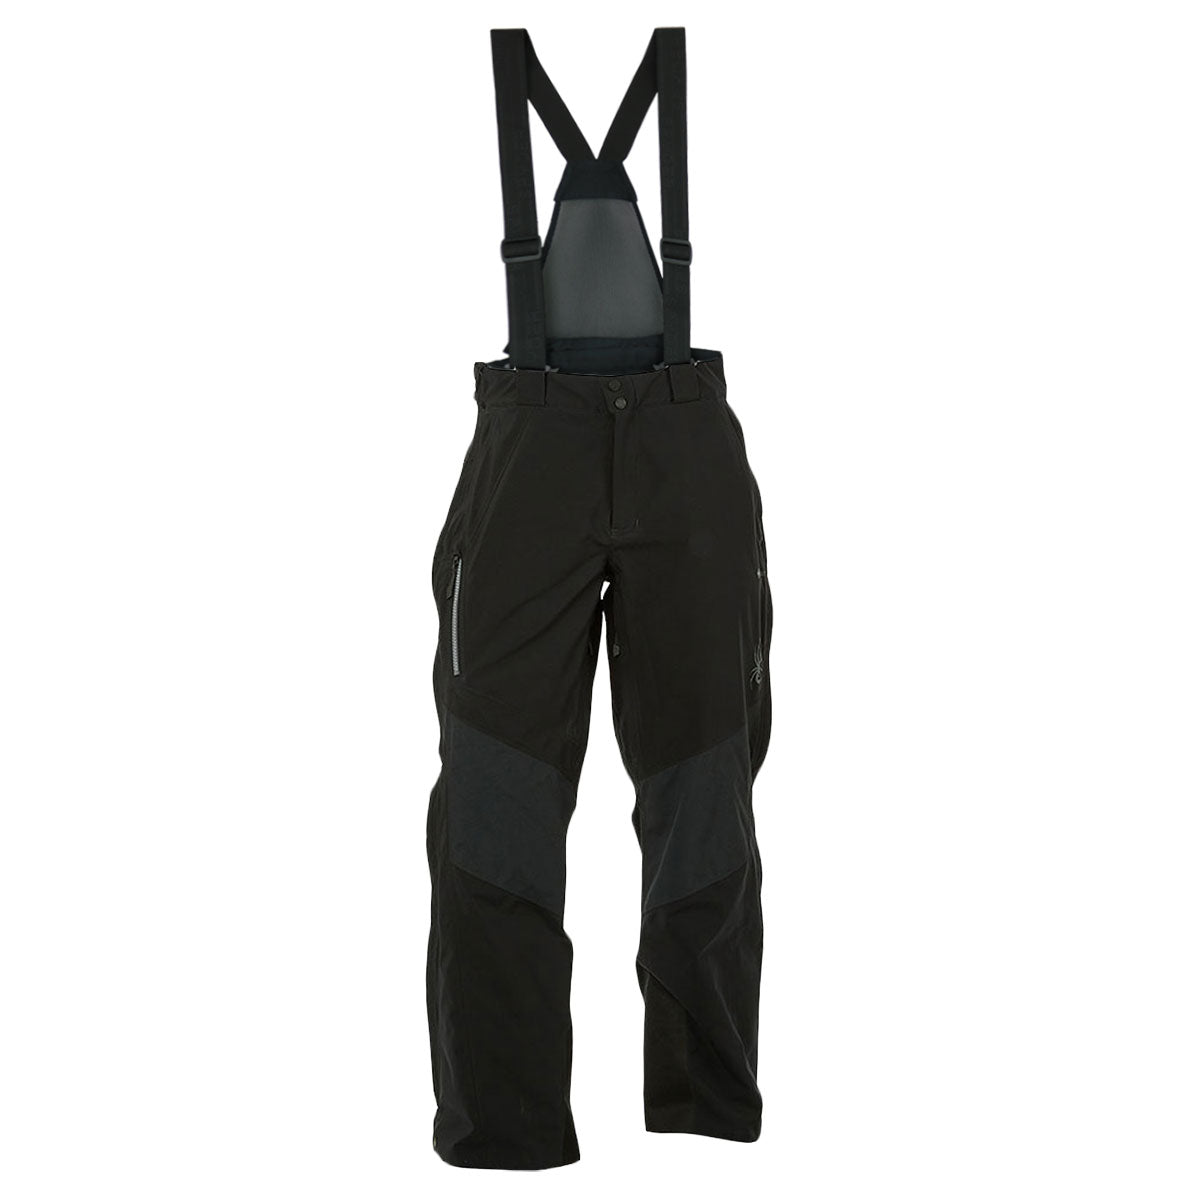 Spyder, Pants, Spyder Winter Insulated Black Ski Pants